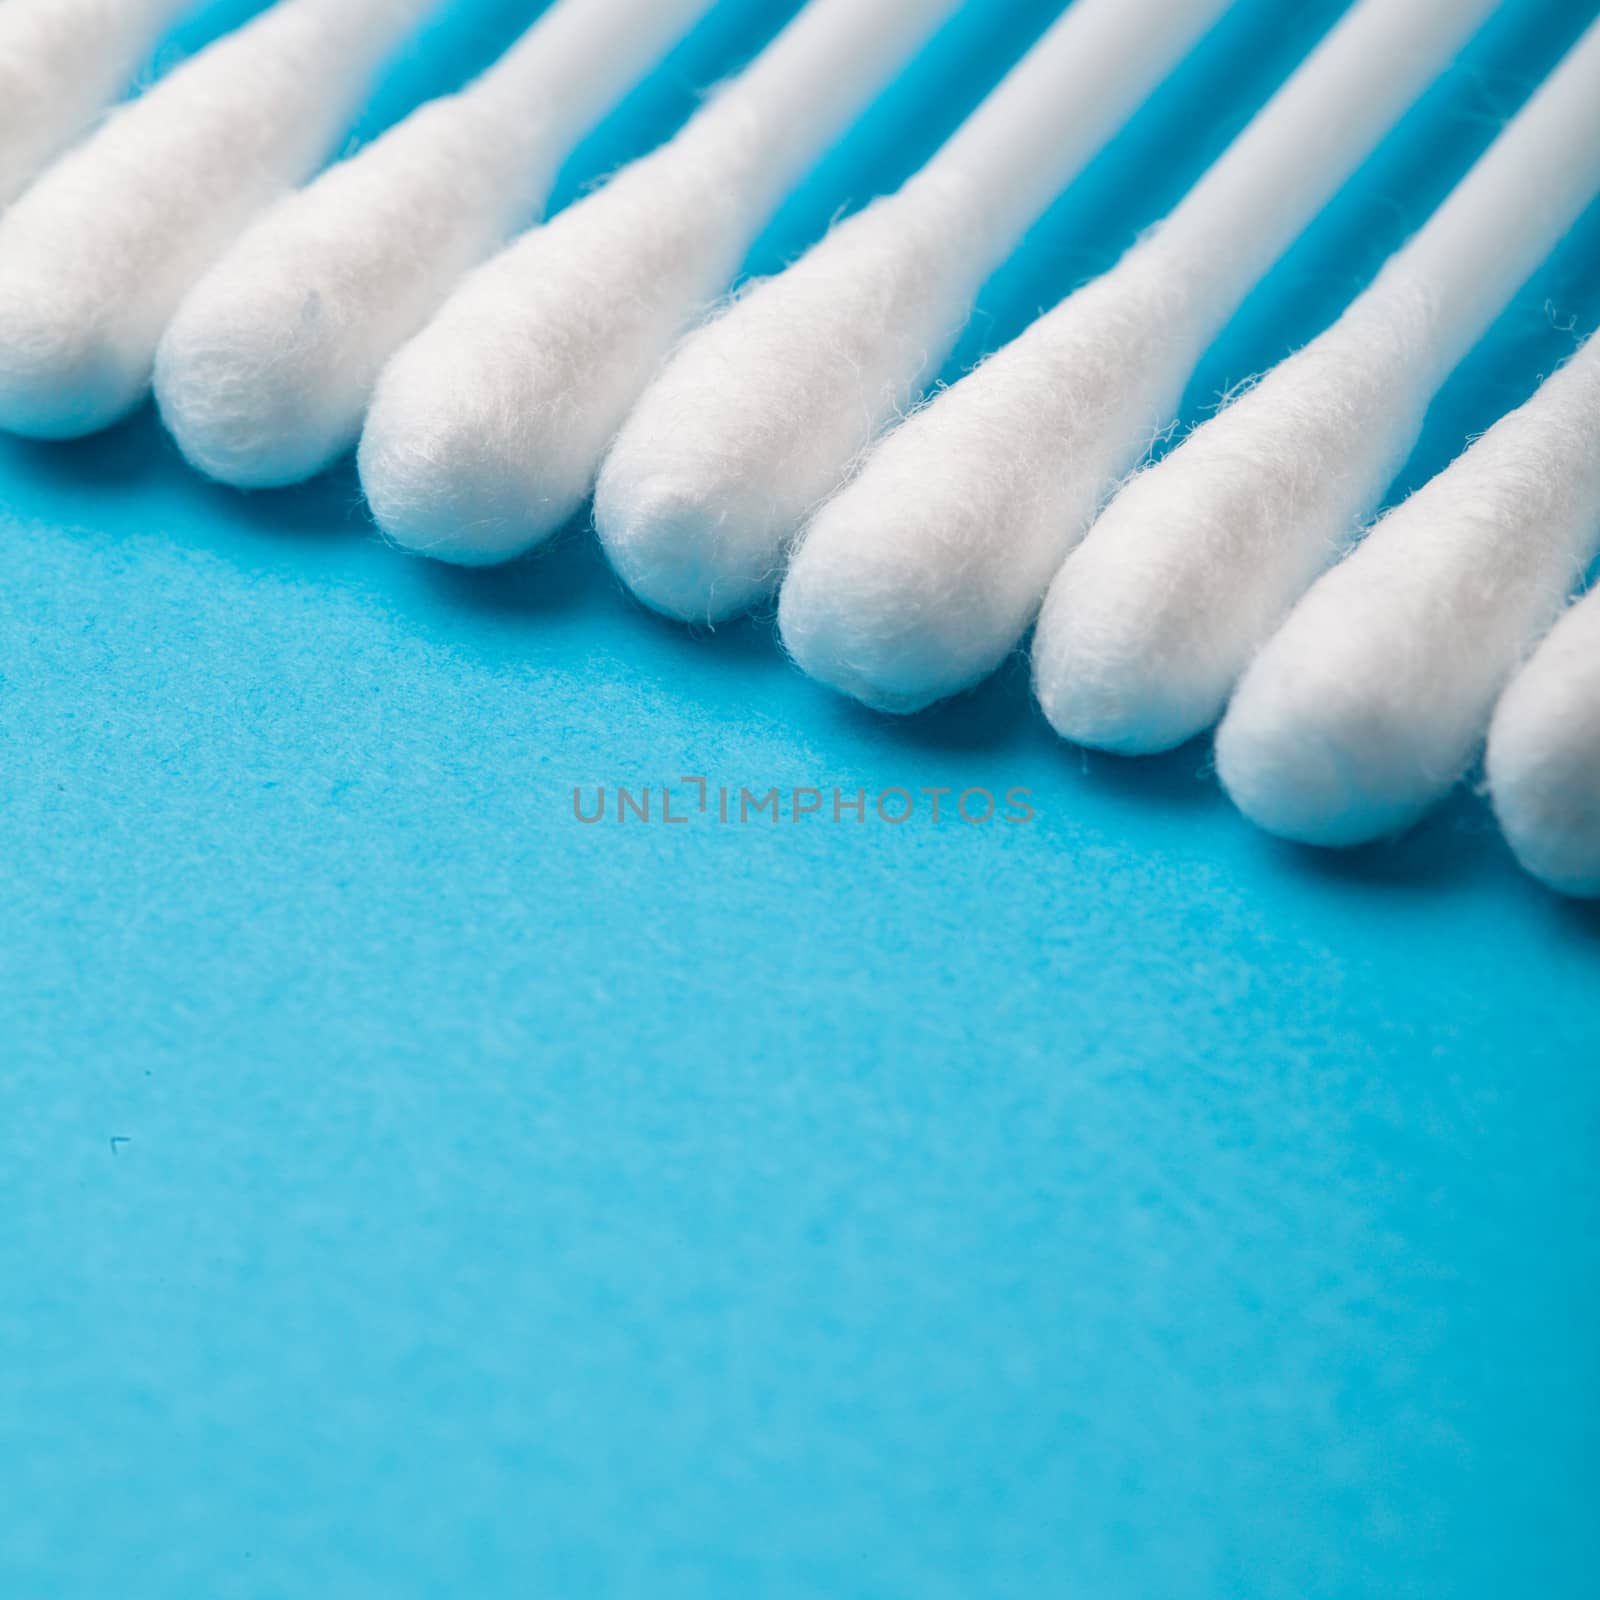 White cotton ear sticks on blue background macro